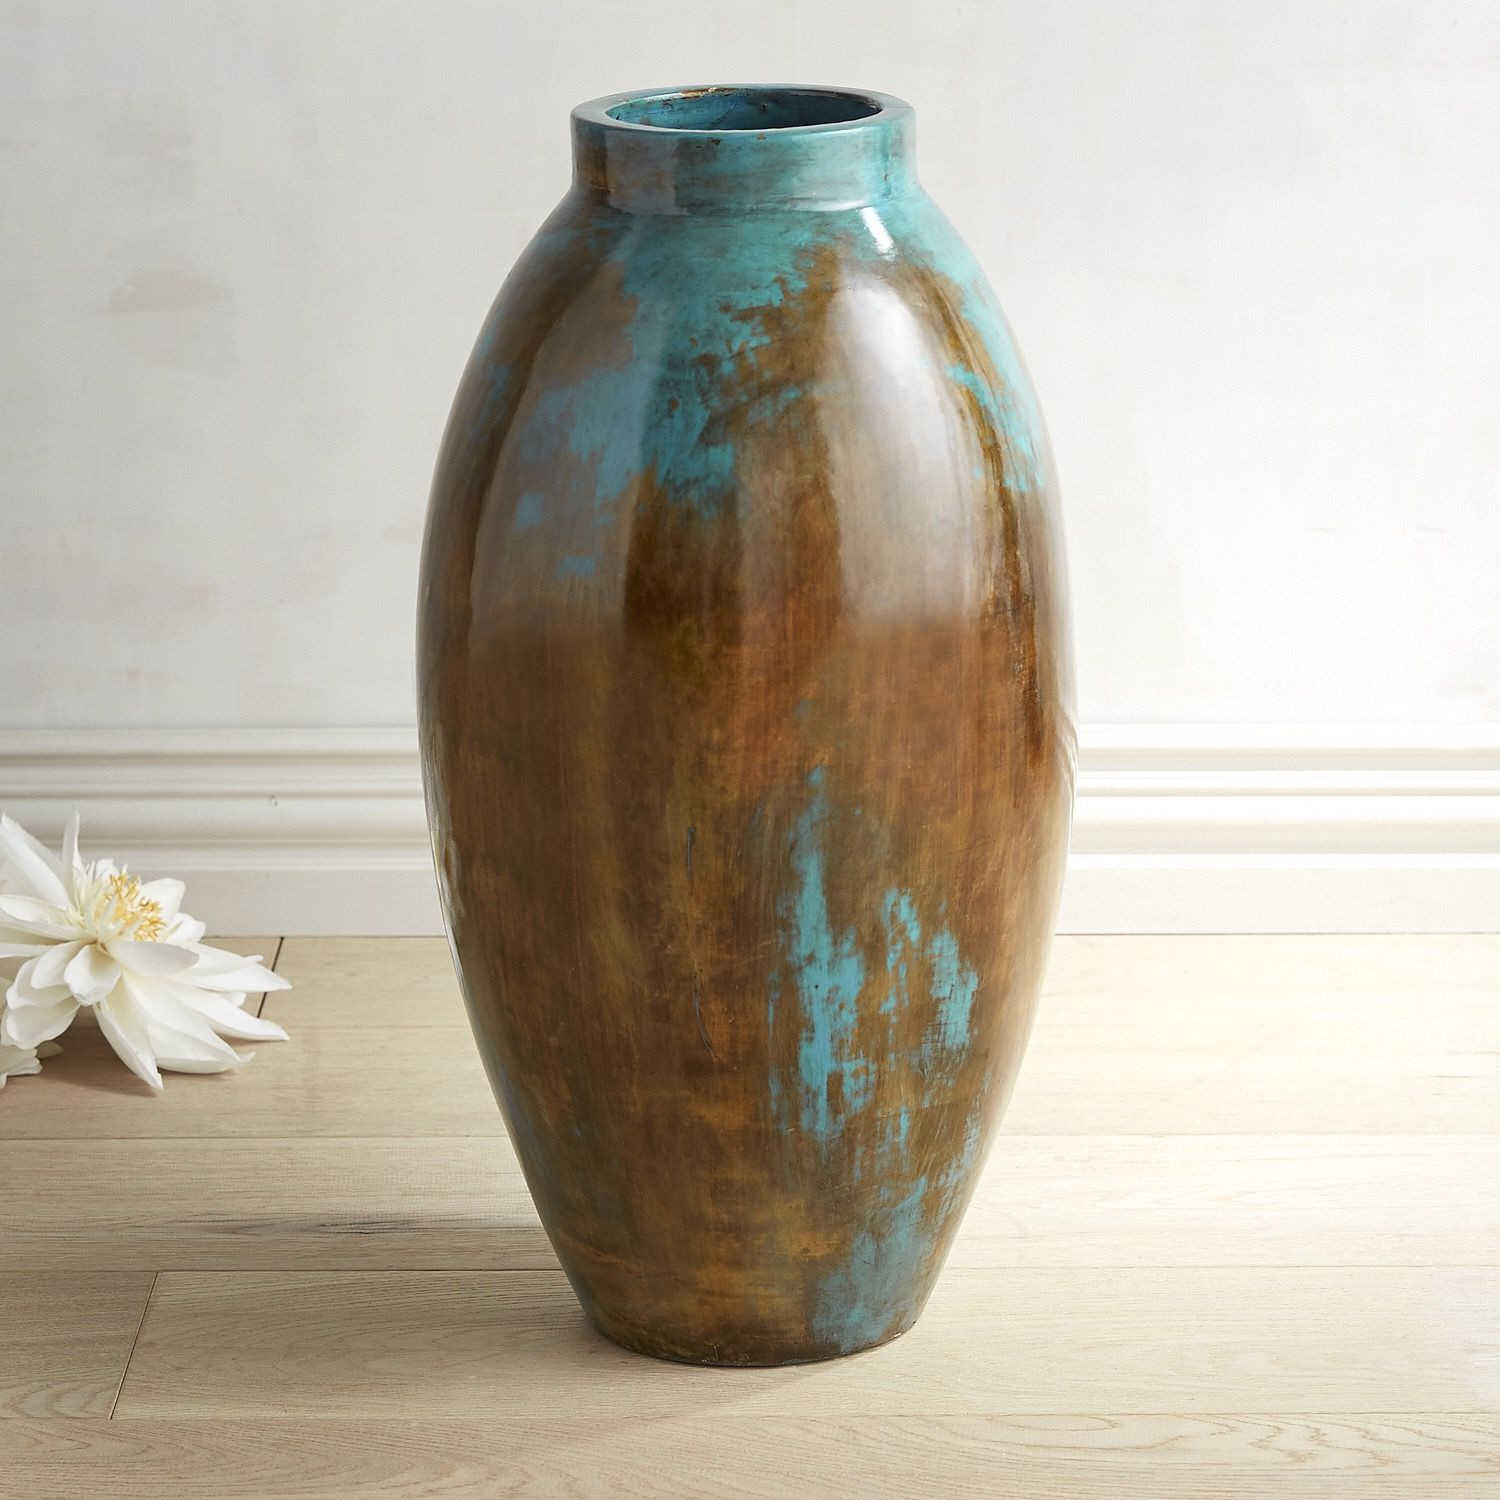 24 Lovely Match Pewter Vase 2024 free download match pewter vase of blue brown oval floor vase products pinterest vase vases with blue brown oval floor vase